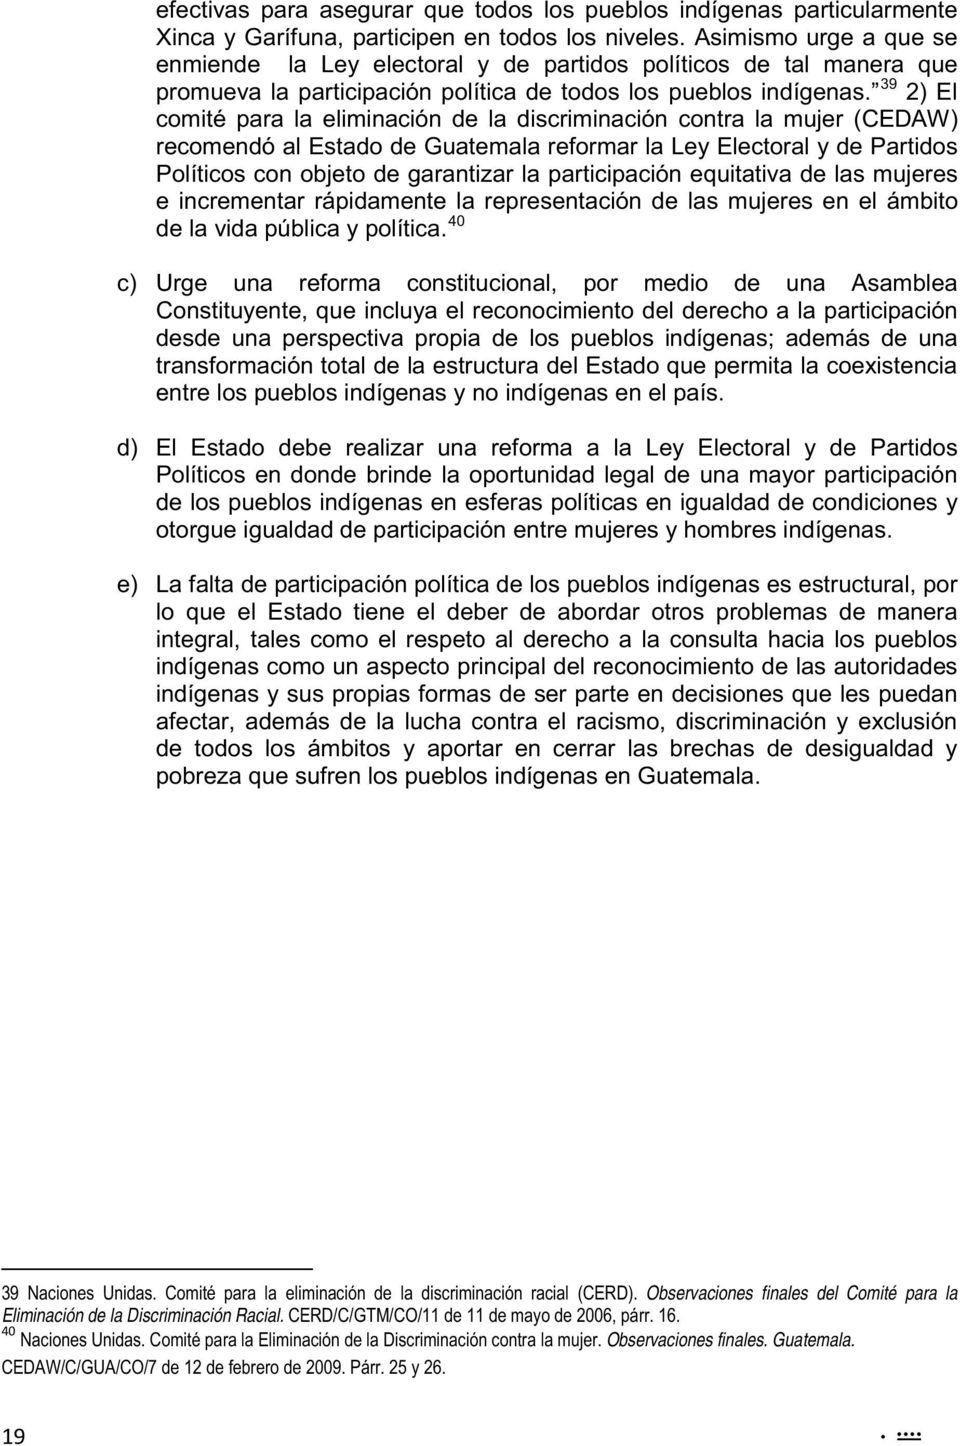 39 2) El comité para la eliminación de la discriminación contra la mujer (CEDAW) recomendó al Estado de Guatemala reformar la Ley Electoral y de Partidos Políticos con objeto de garantizar la